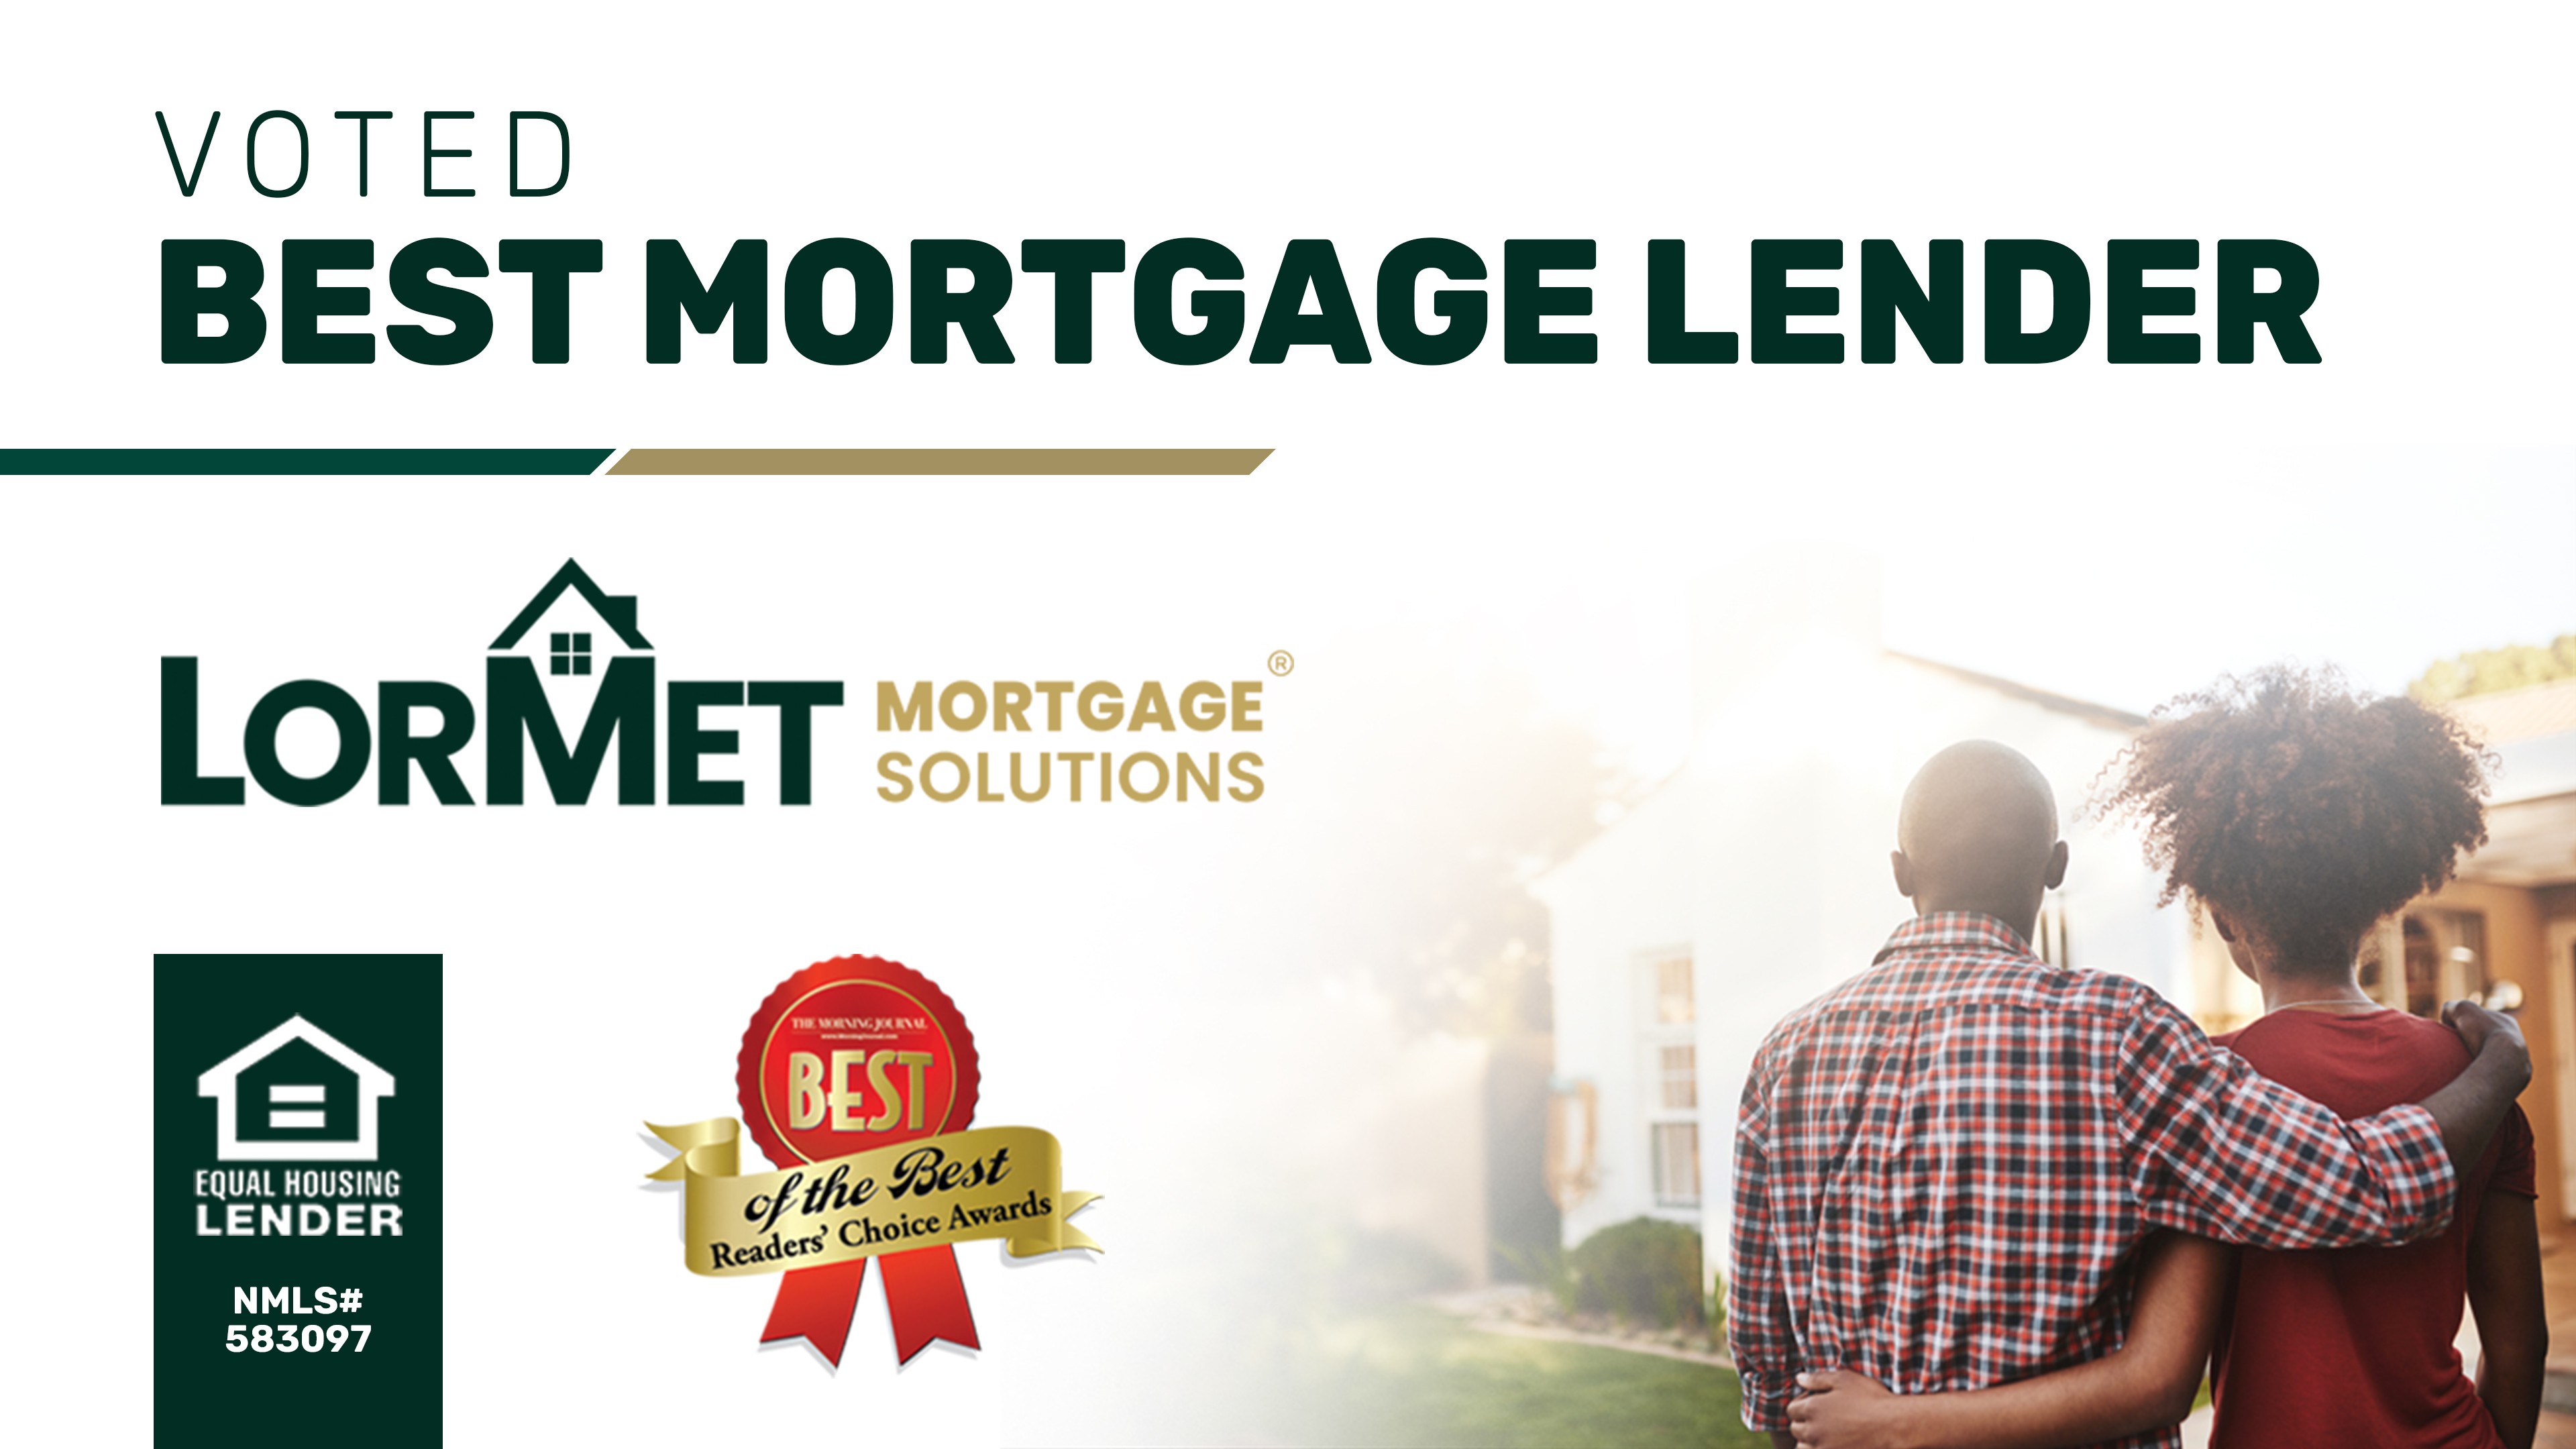 Voted Best Mortgage Lender